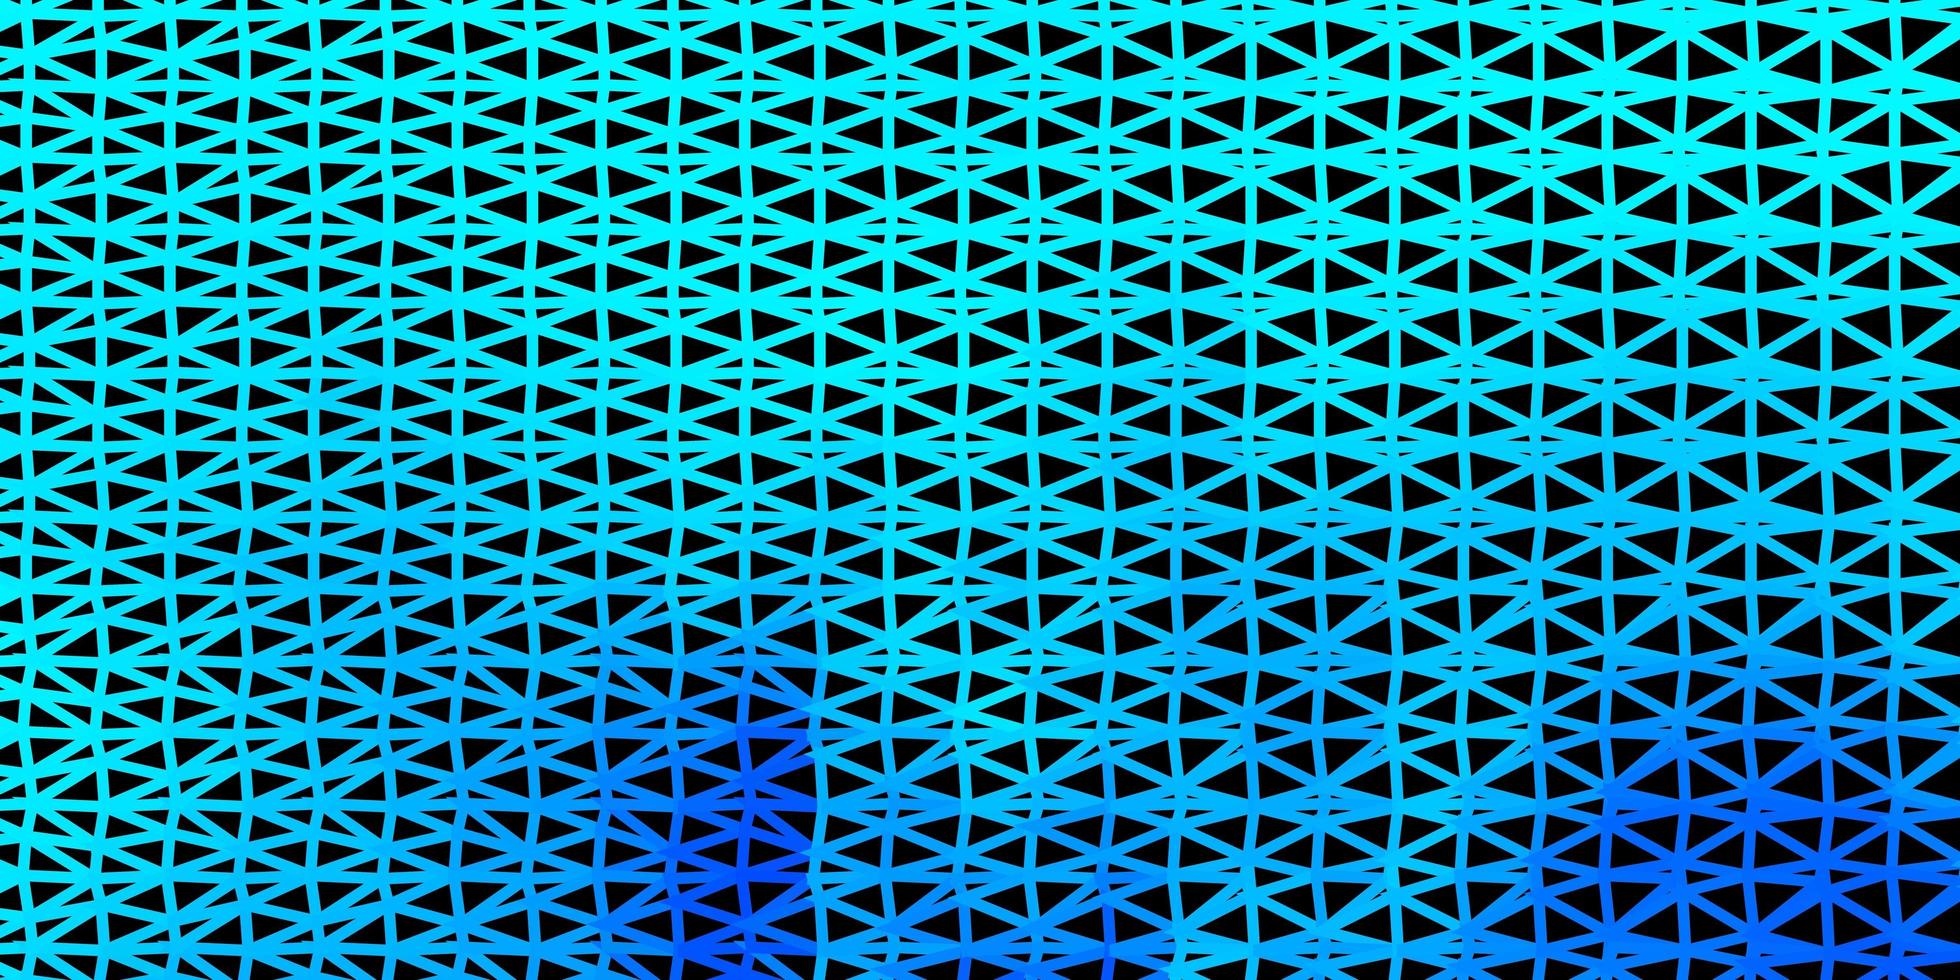 projeto do mosaico do triângulo do vetor azul claro.